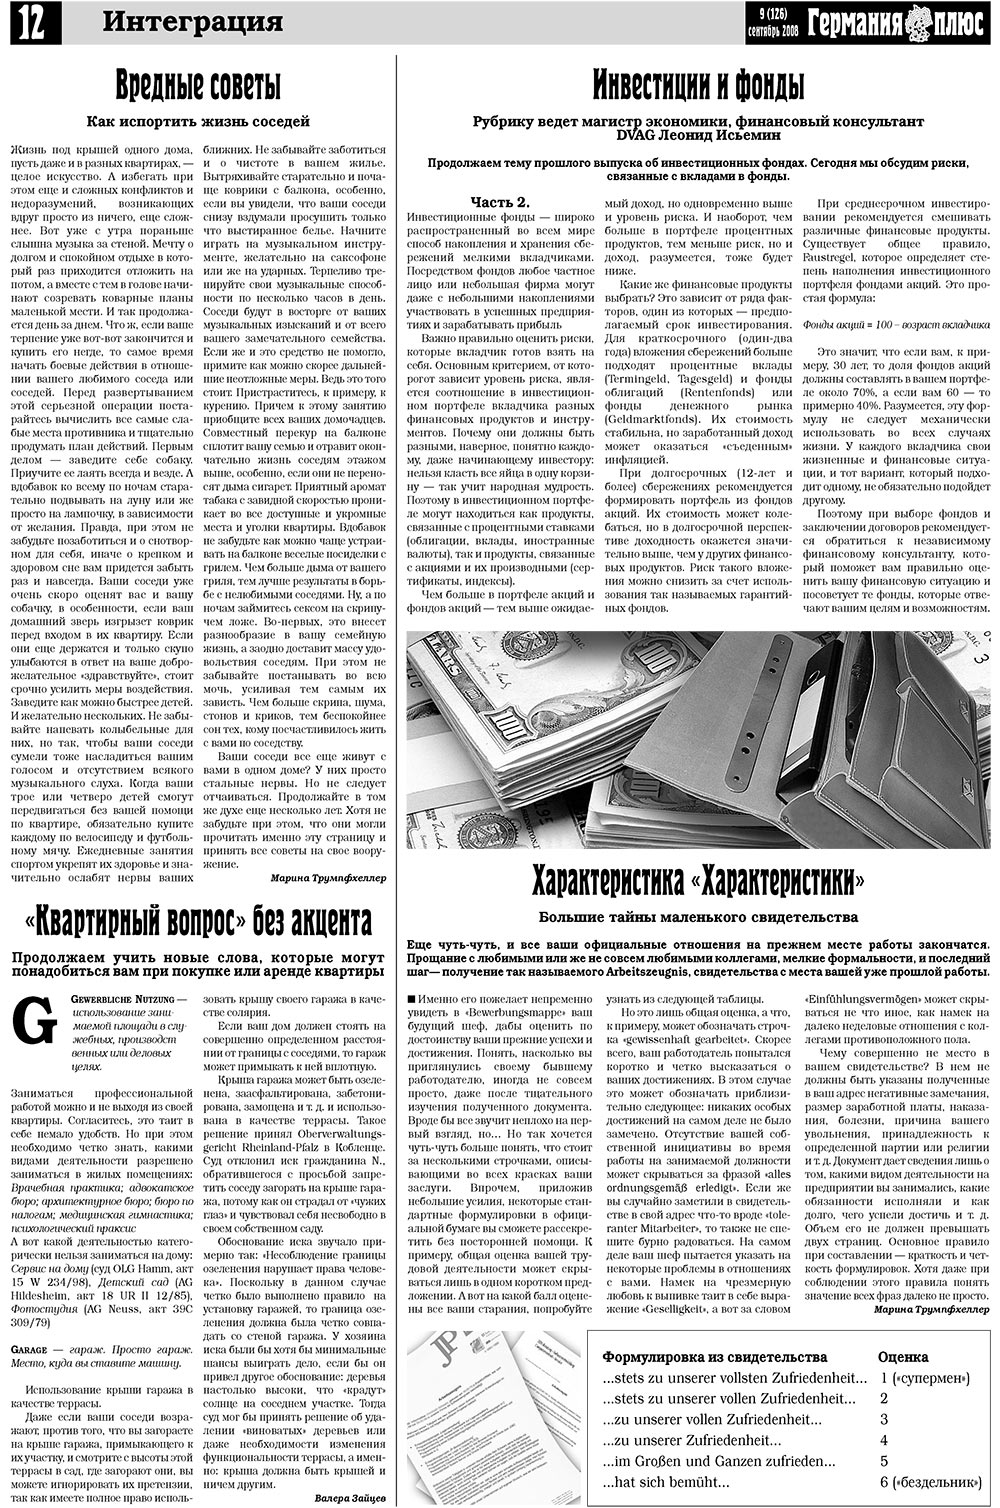 Германия плюс, газета. 2008 №9 стр.16